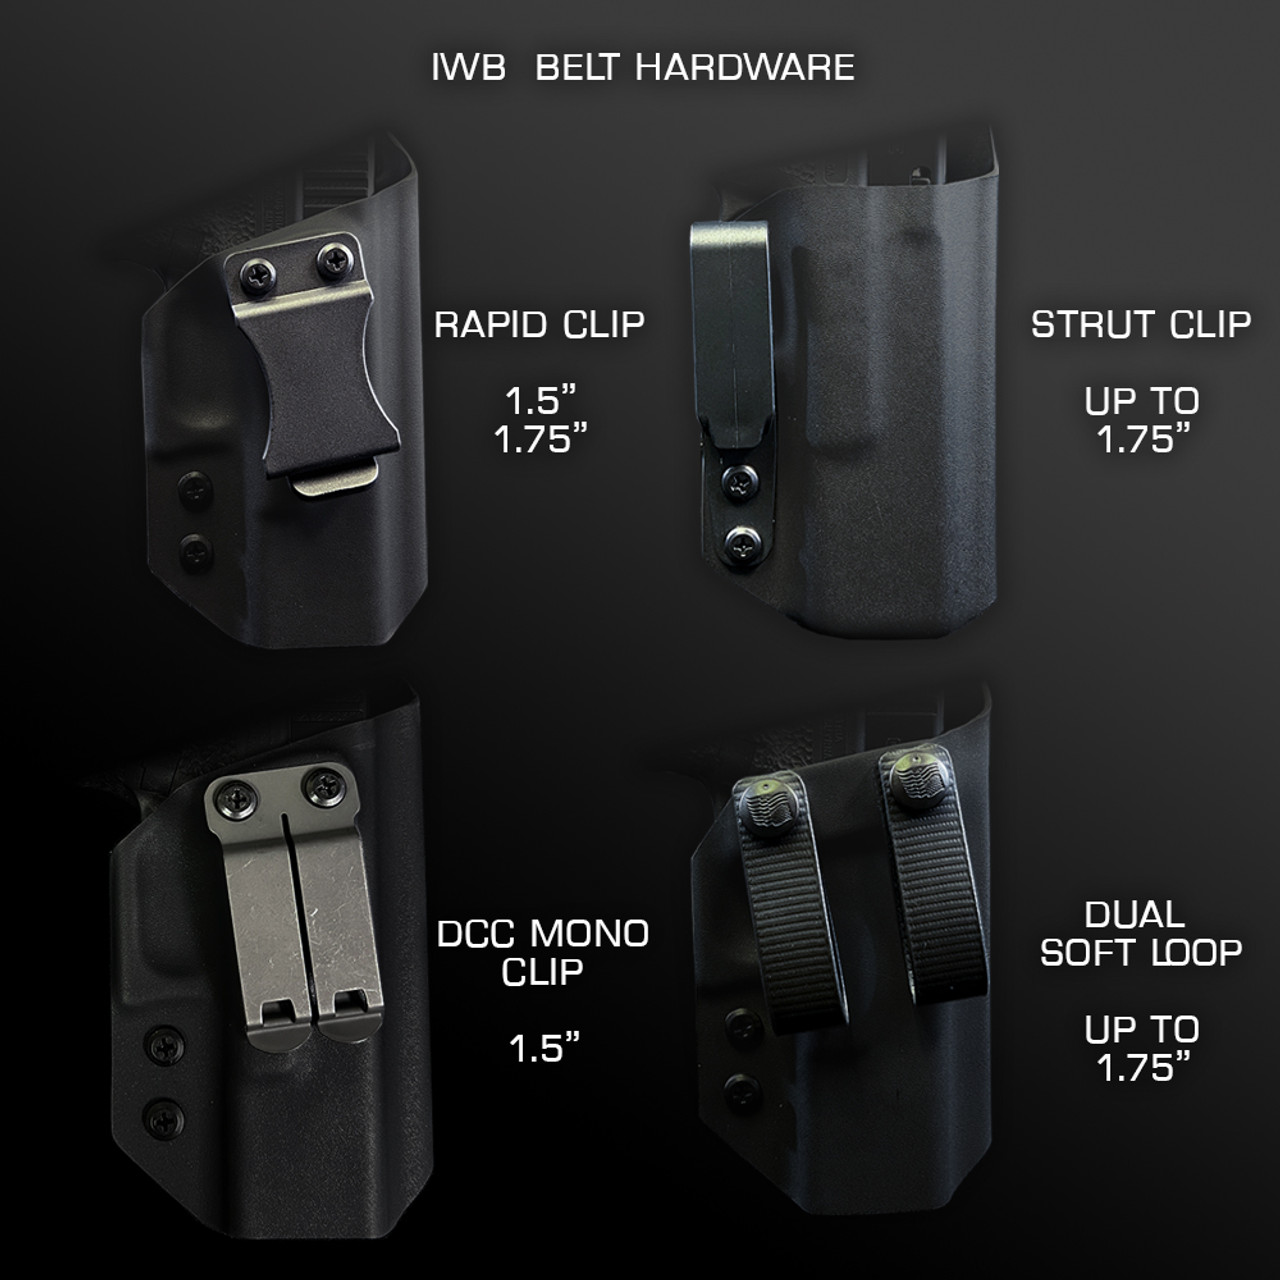 C&G DCC Mod4 Shorty | IWB Metal Belt Clips | Attachment | C&G Holsters 1.50 DCC Mod4 Shorty Set (x2)